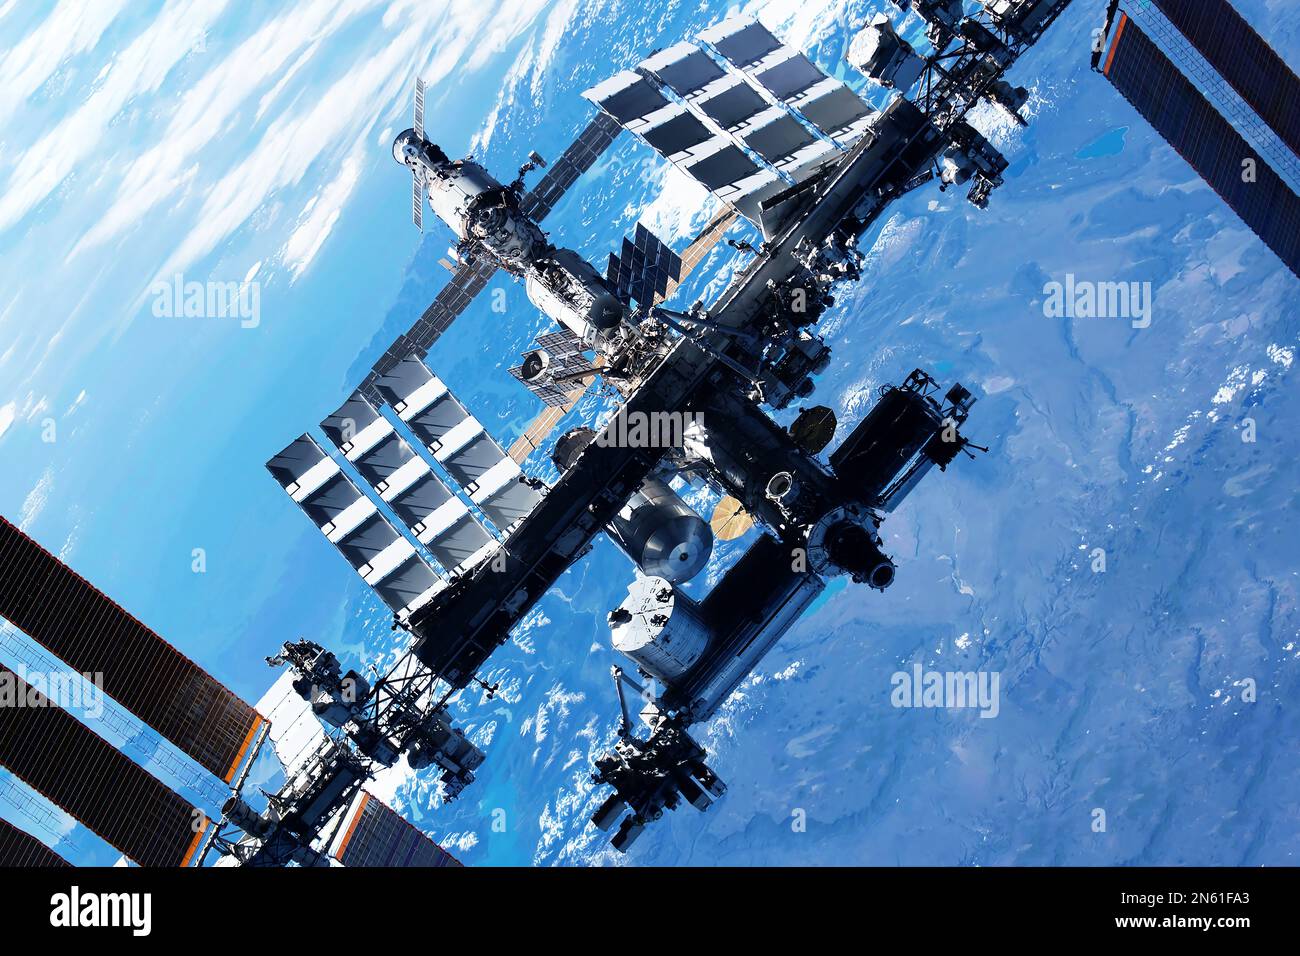 Station spatiale internationale au-dessus de la Terre. Éléments de cette image fournis par la NASA. Photo de haute qualité Banque D'Images